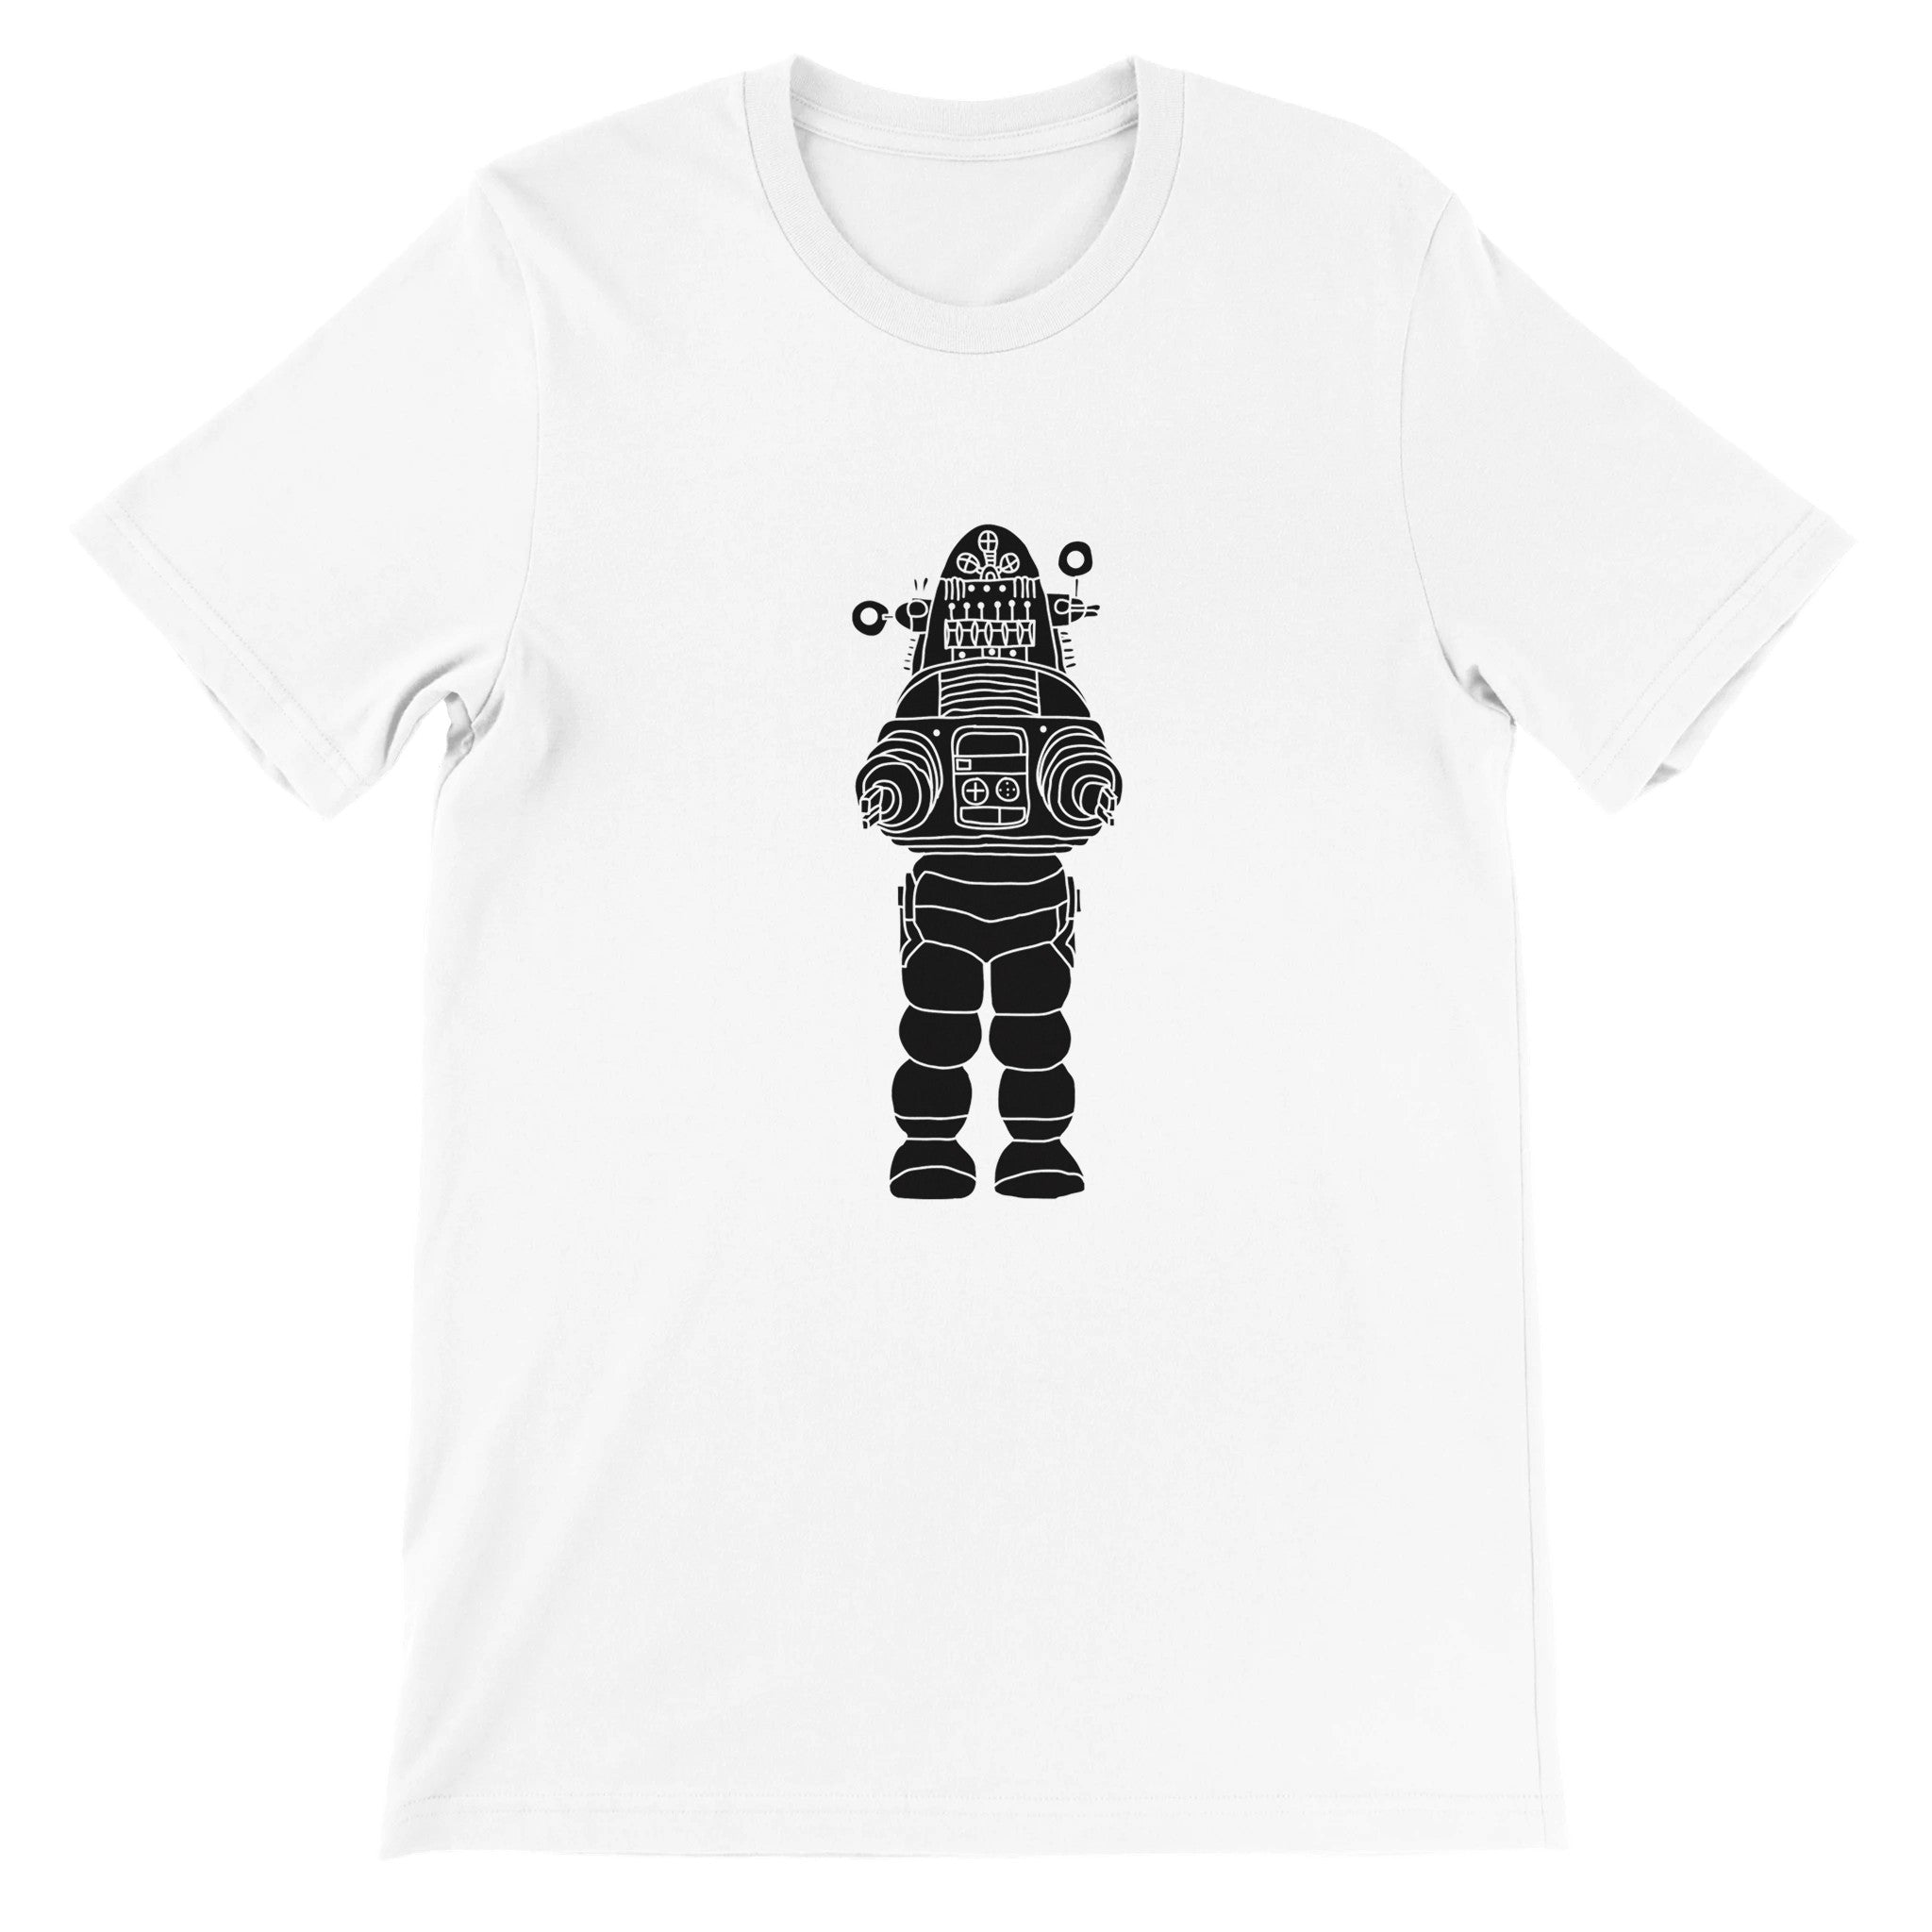 ROBOT UPRISING Crewneck T-shirt - Optimalprint